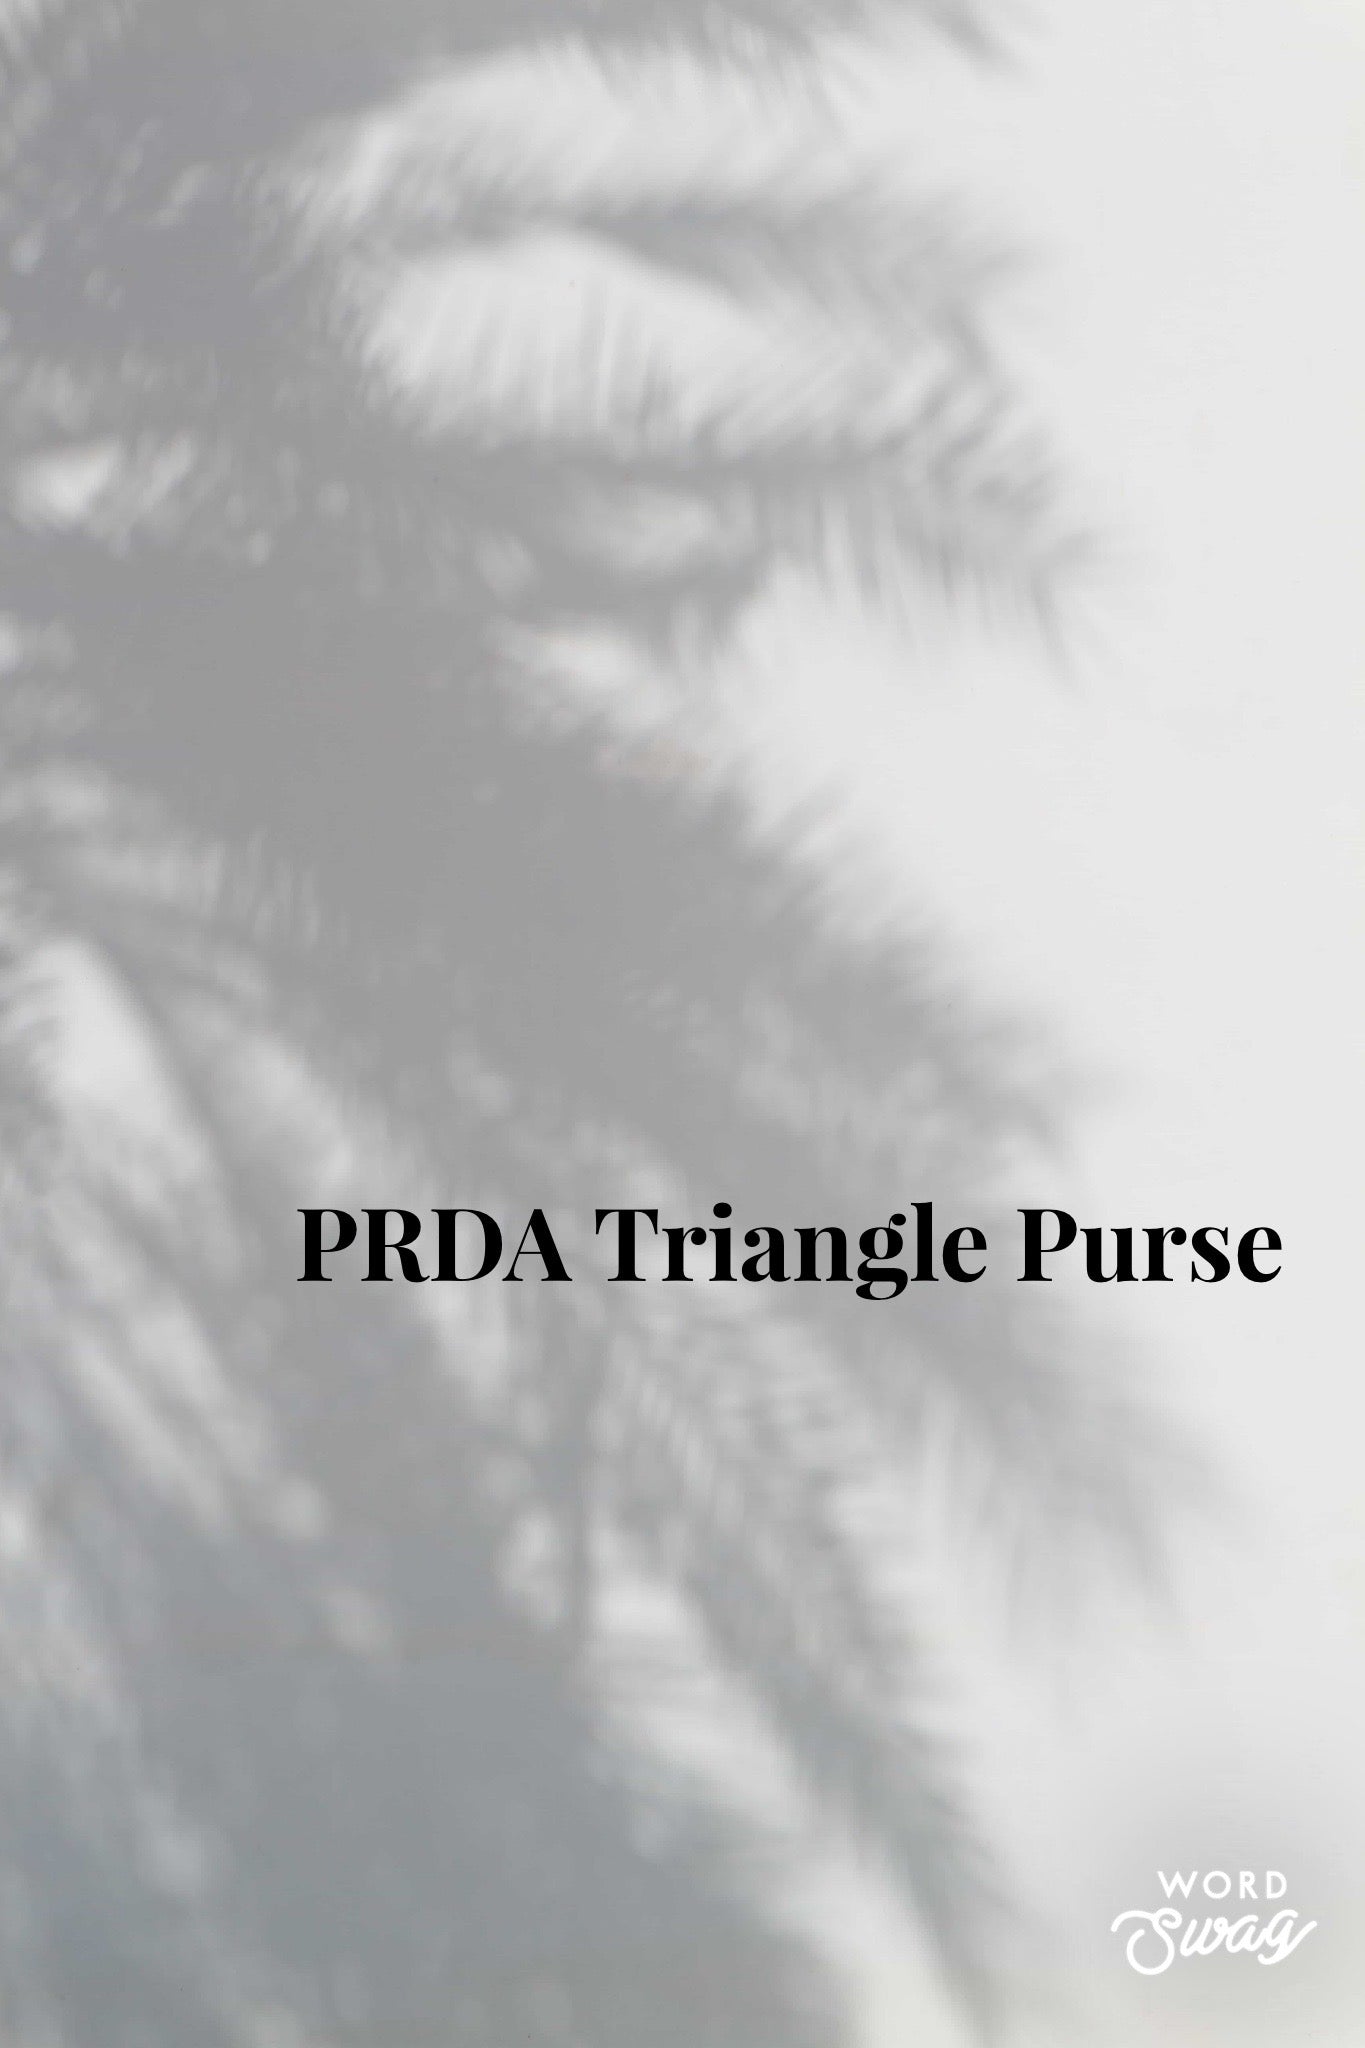 PRDA Triangle Purse